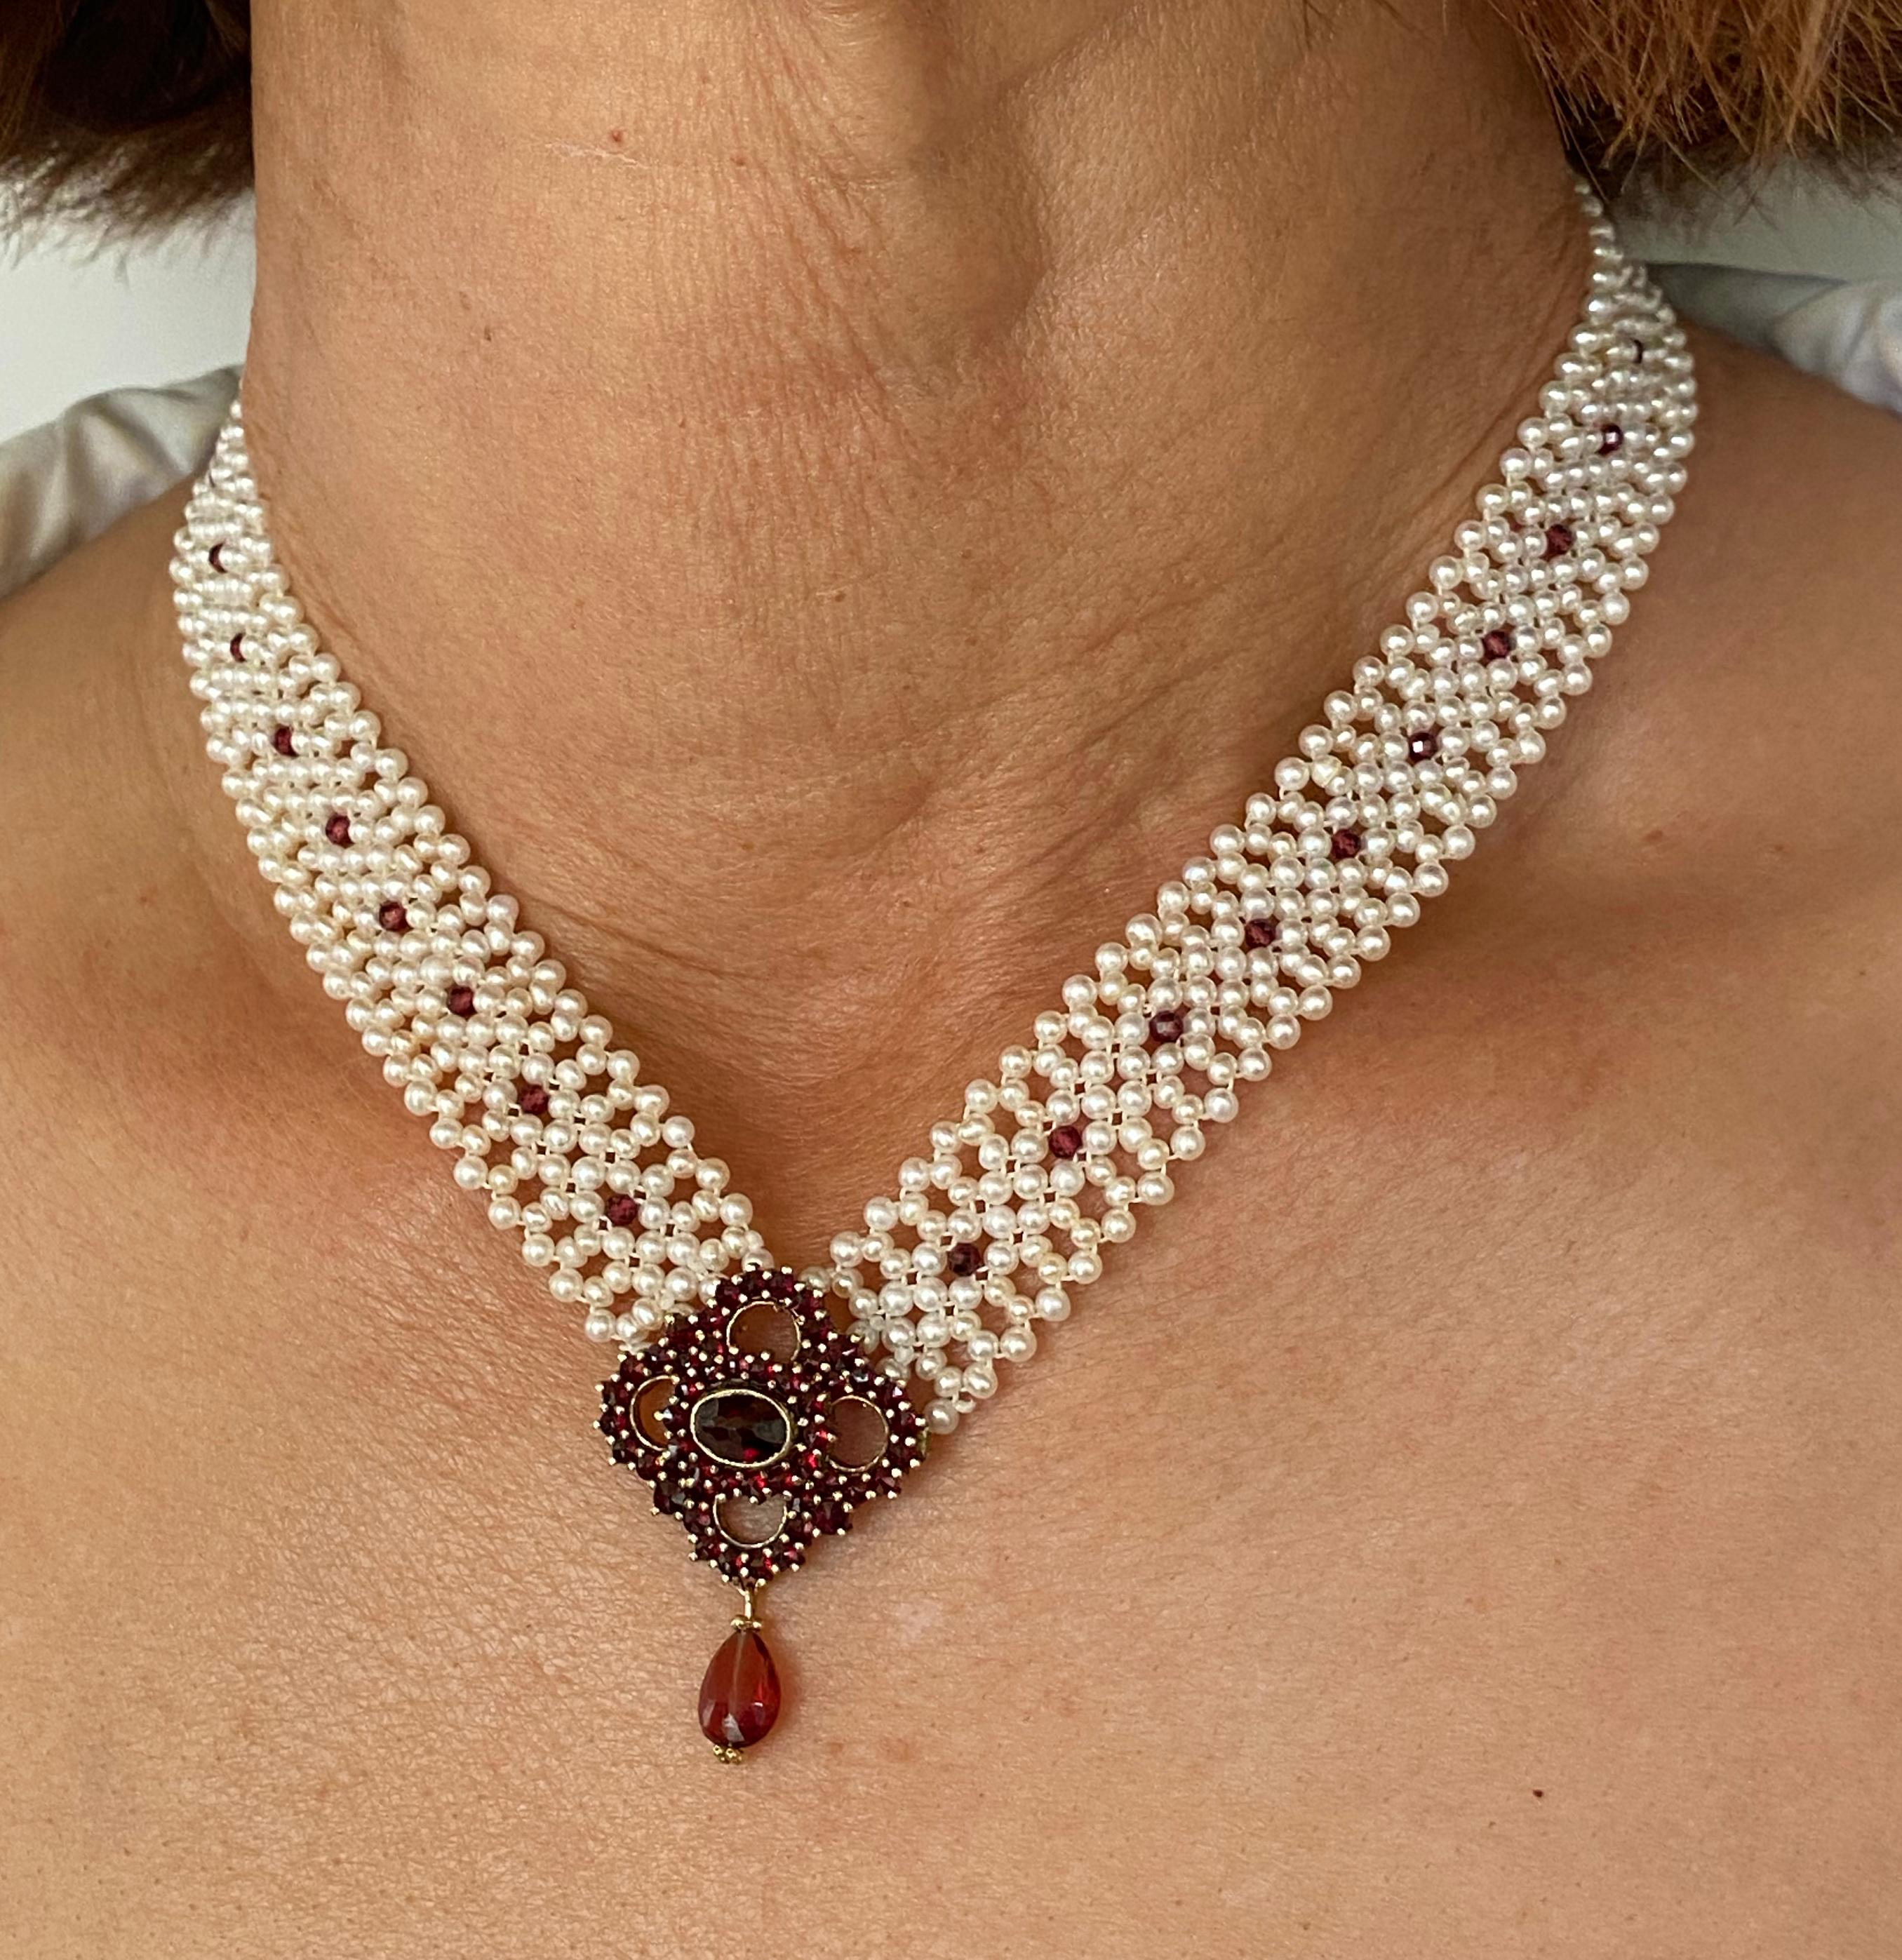 Wunderschöne 'V' Halskette von Marina J. Dieses wunderbare Stück besteht aus weißen Zuchtperlen, die in einem engen, spitzenähnlichen Design miteinander verwoben sind. Kleine Granatperlen sind in das Band aus gewebten Perlen eingewebt. Eine